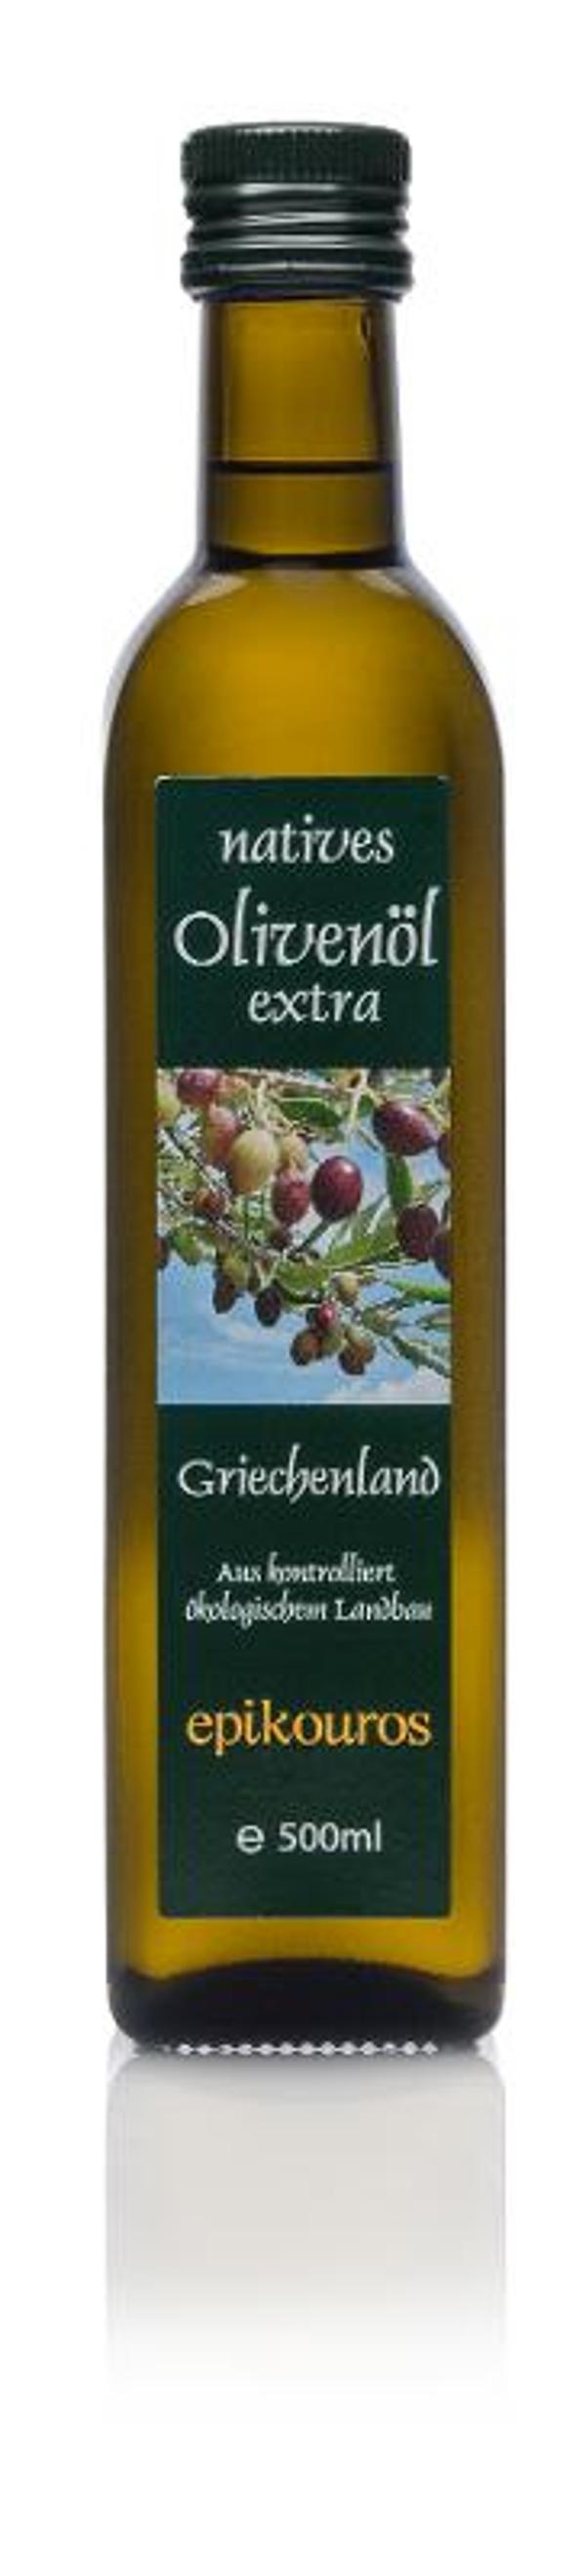 Produktfoto zu Olivenöl Kalamata 0,5 l